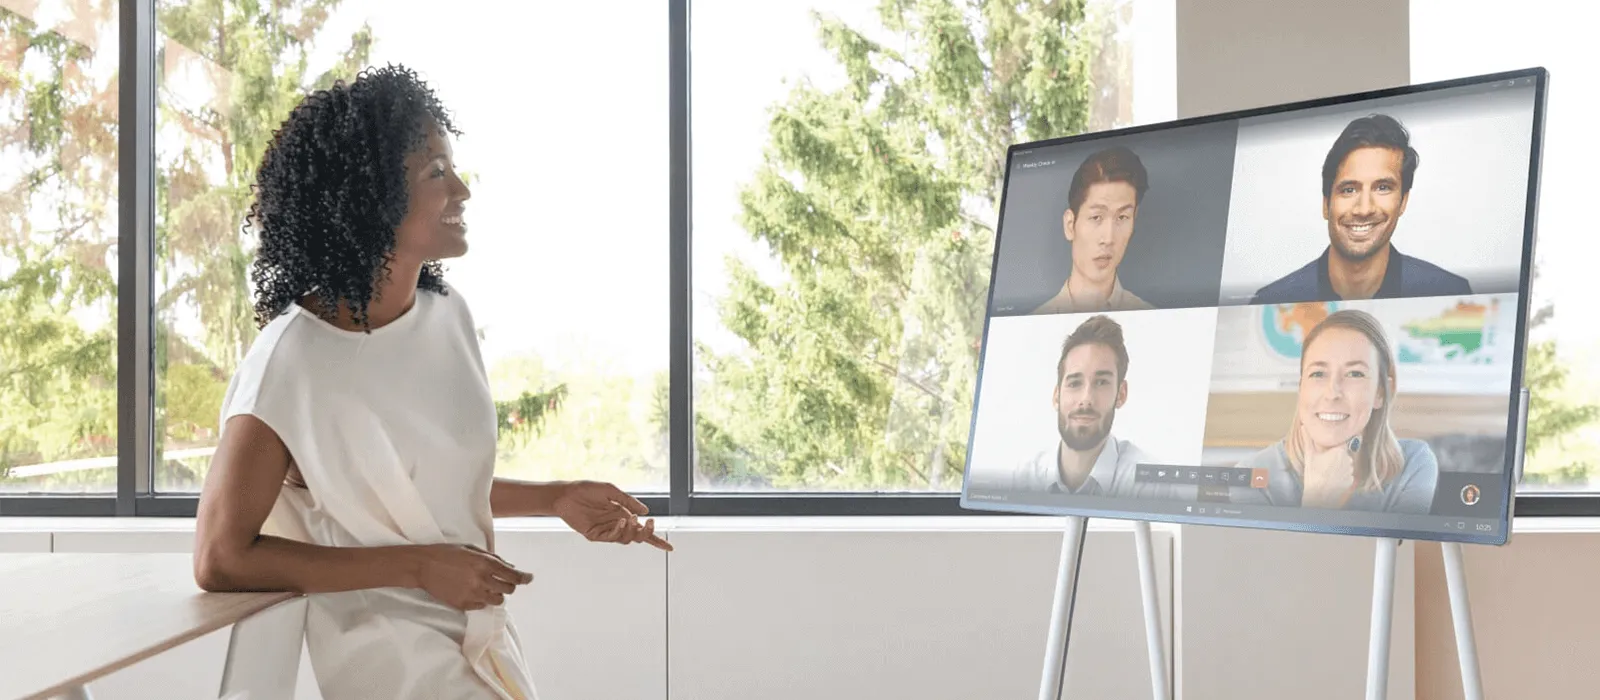 Eine Frau steht vor einem Surface Hub 3 und hält eine Videokonferenz mit vier Personen